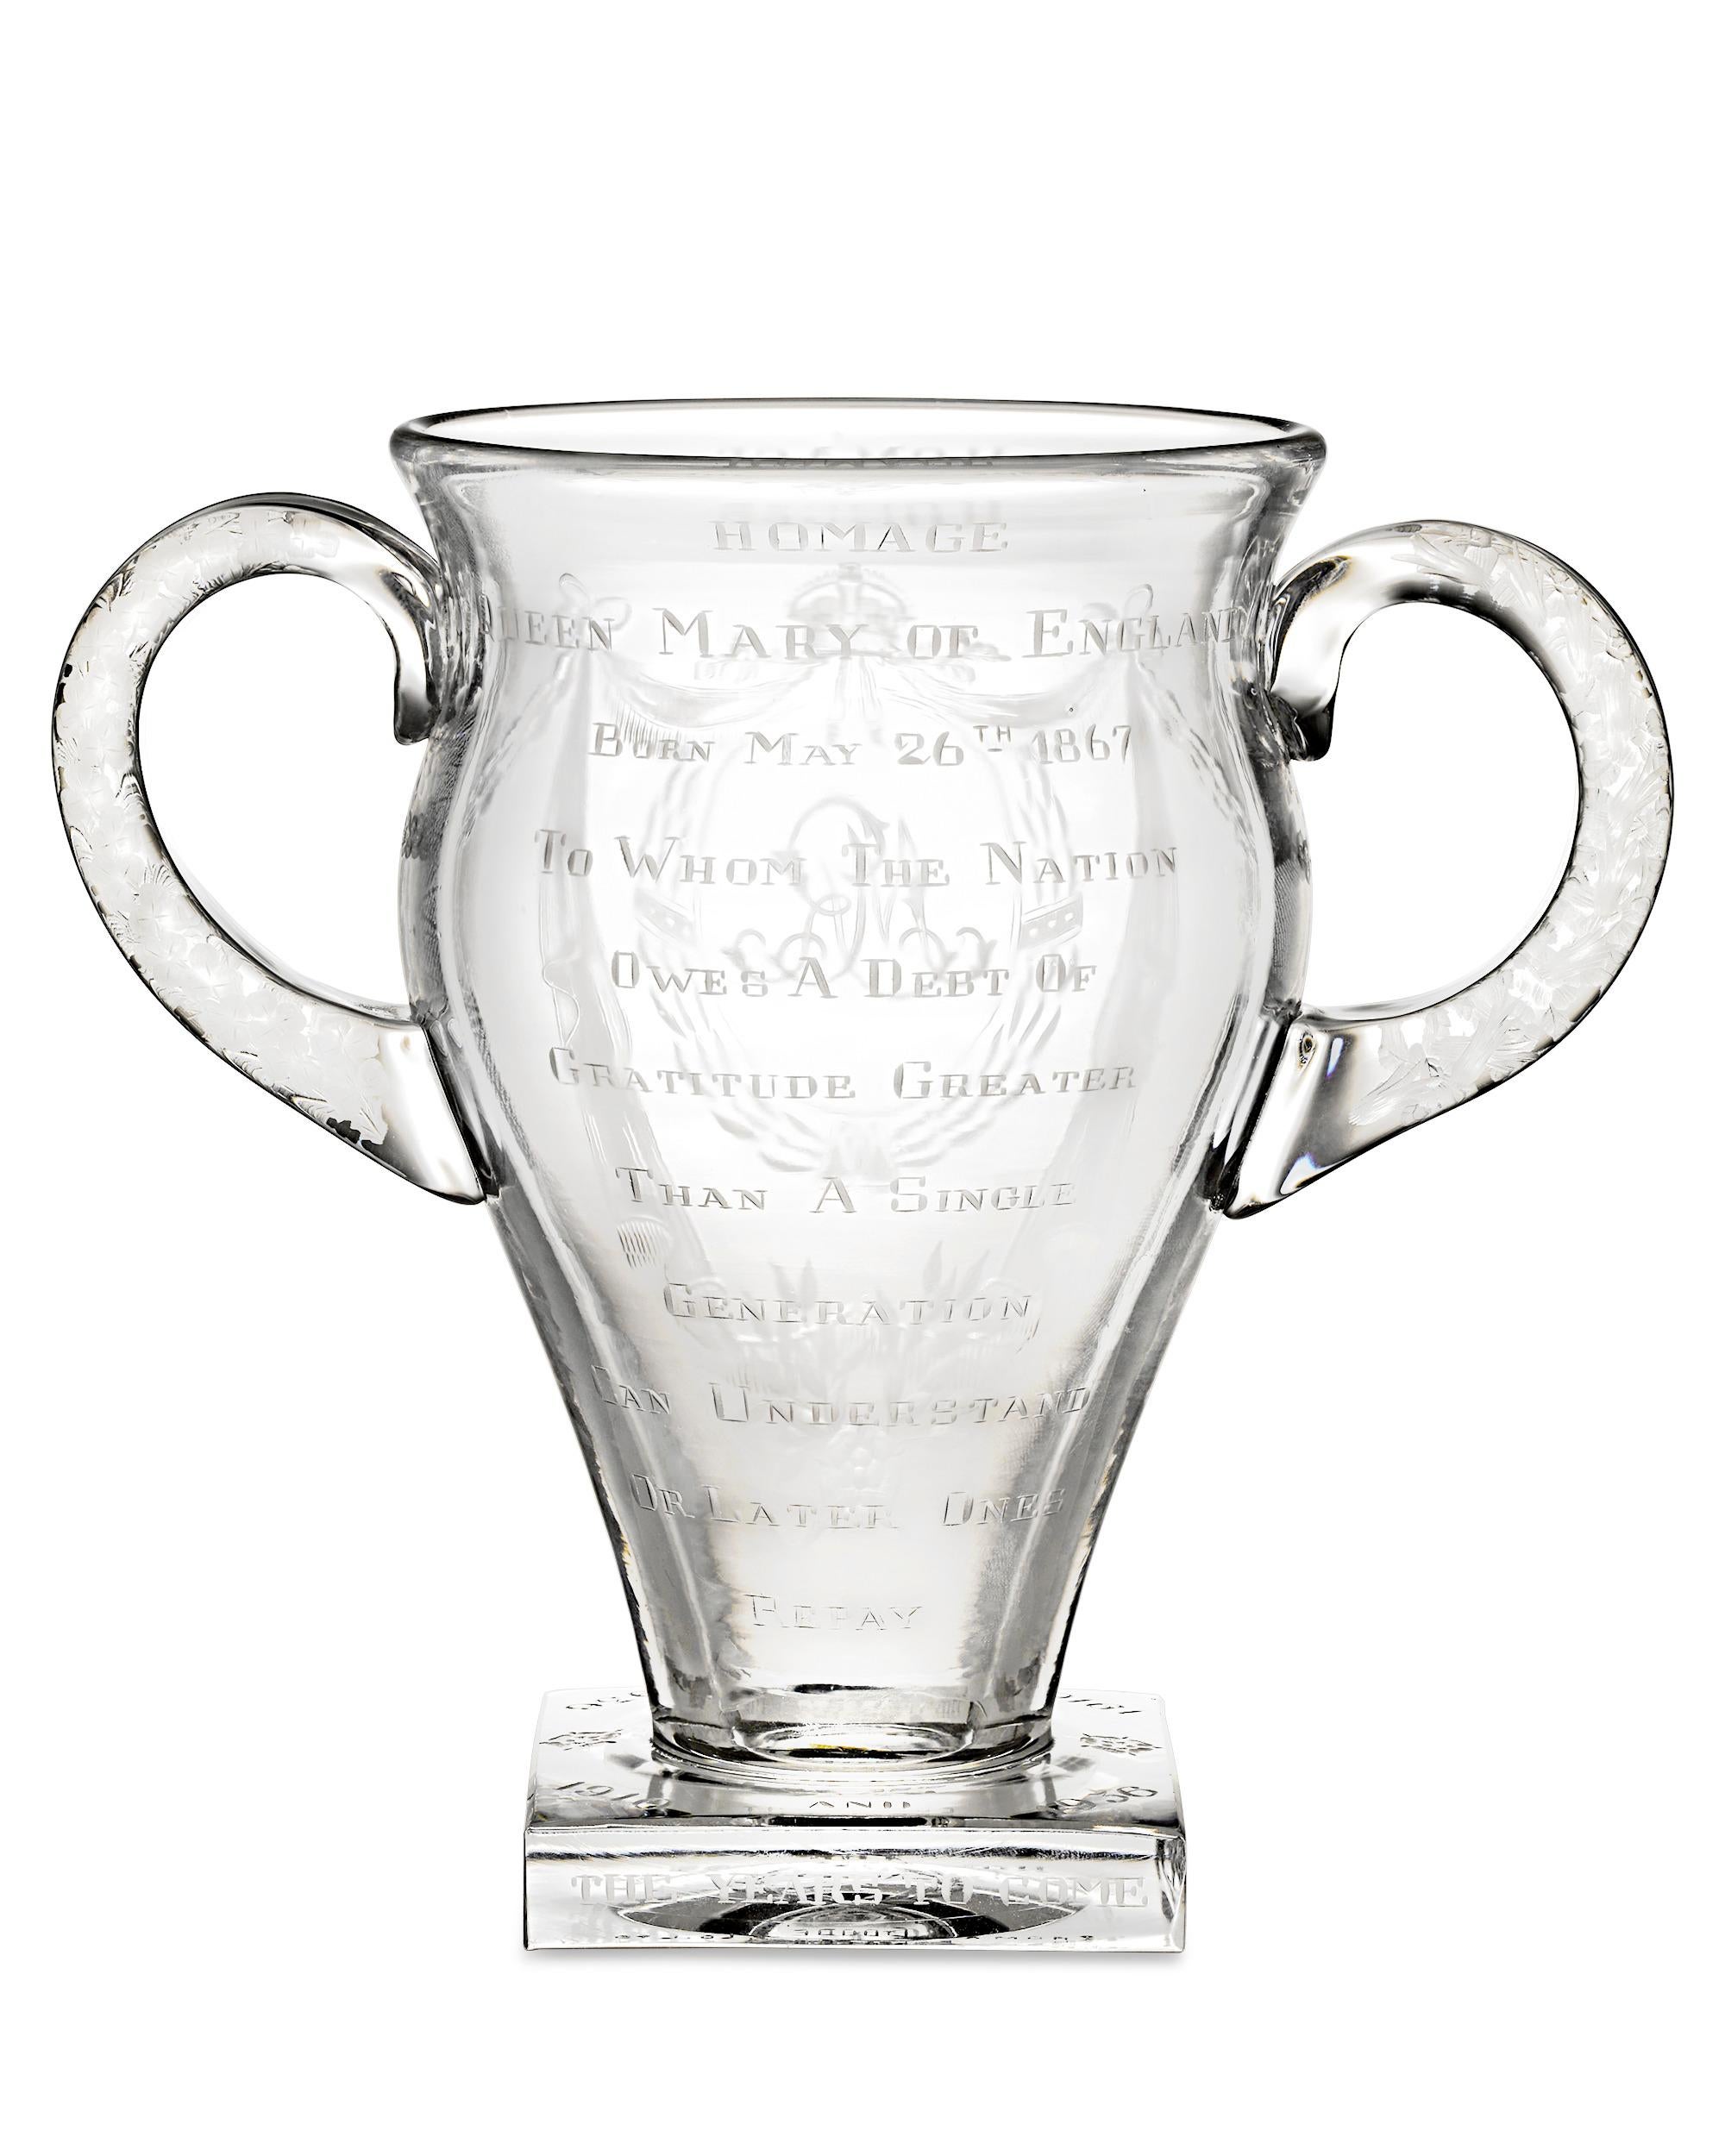 Diese bemerkenswerte Vase aus geätztem Glas in limitierter Auflage ist eine Hommage an Königin Mary von Teck, die von 1910 bis 1937 Königingemahlin von Großbritannien war. Sie regierte zusammen mit ihrem Ehemann, König Georg V., in einer Zeit großer